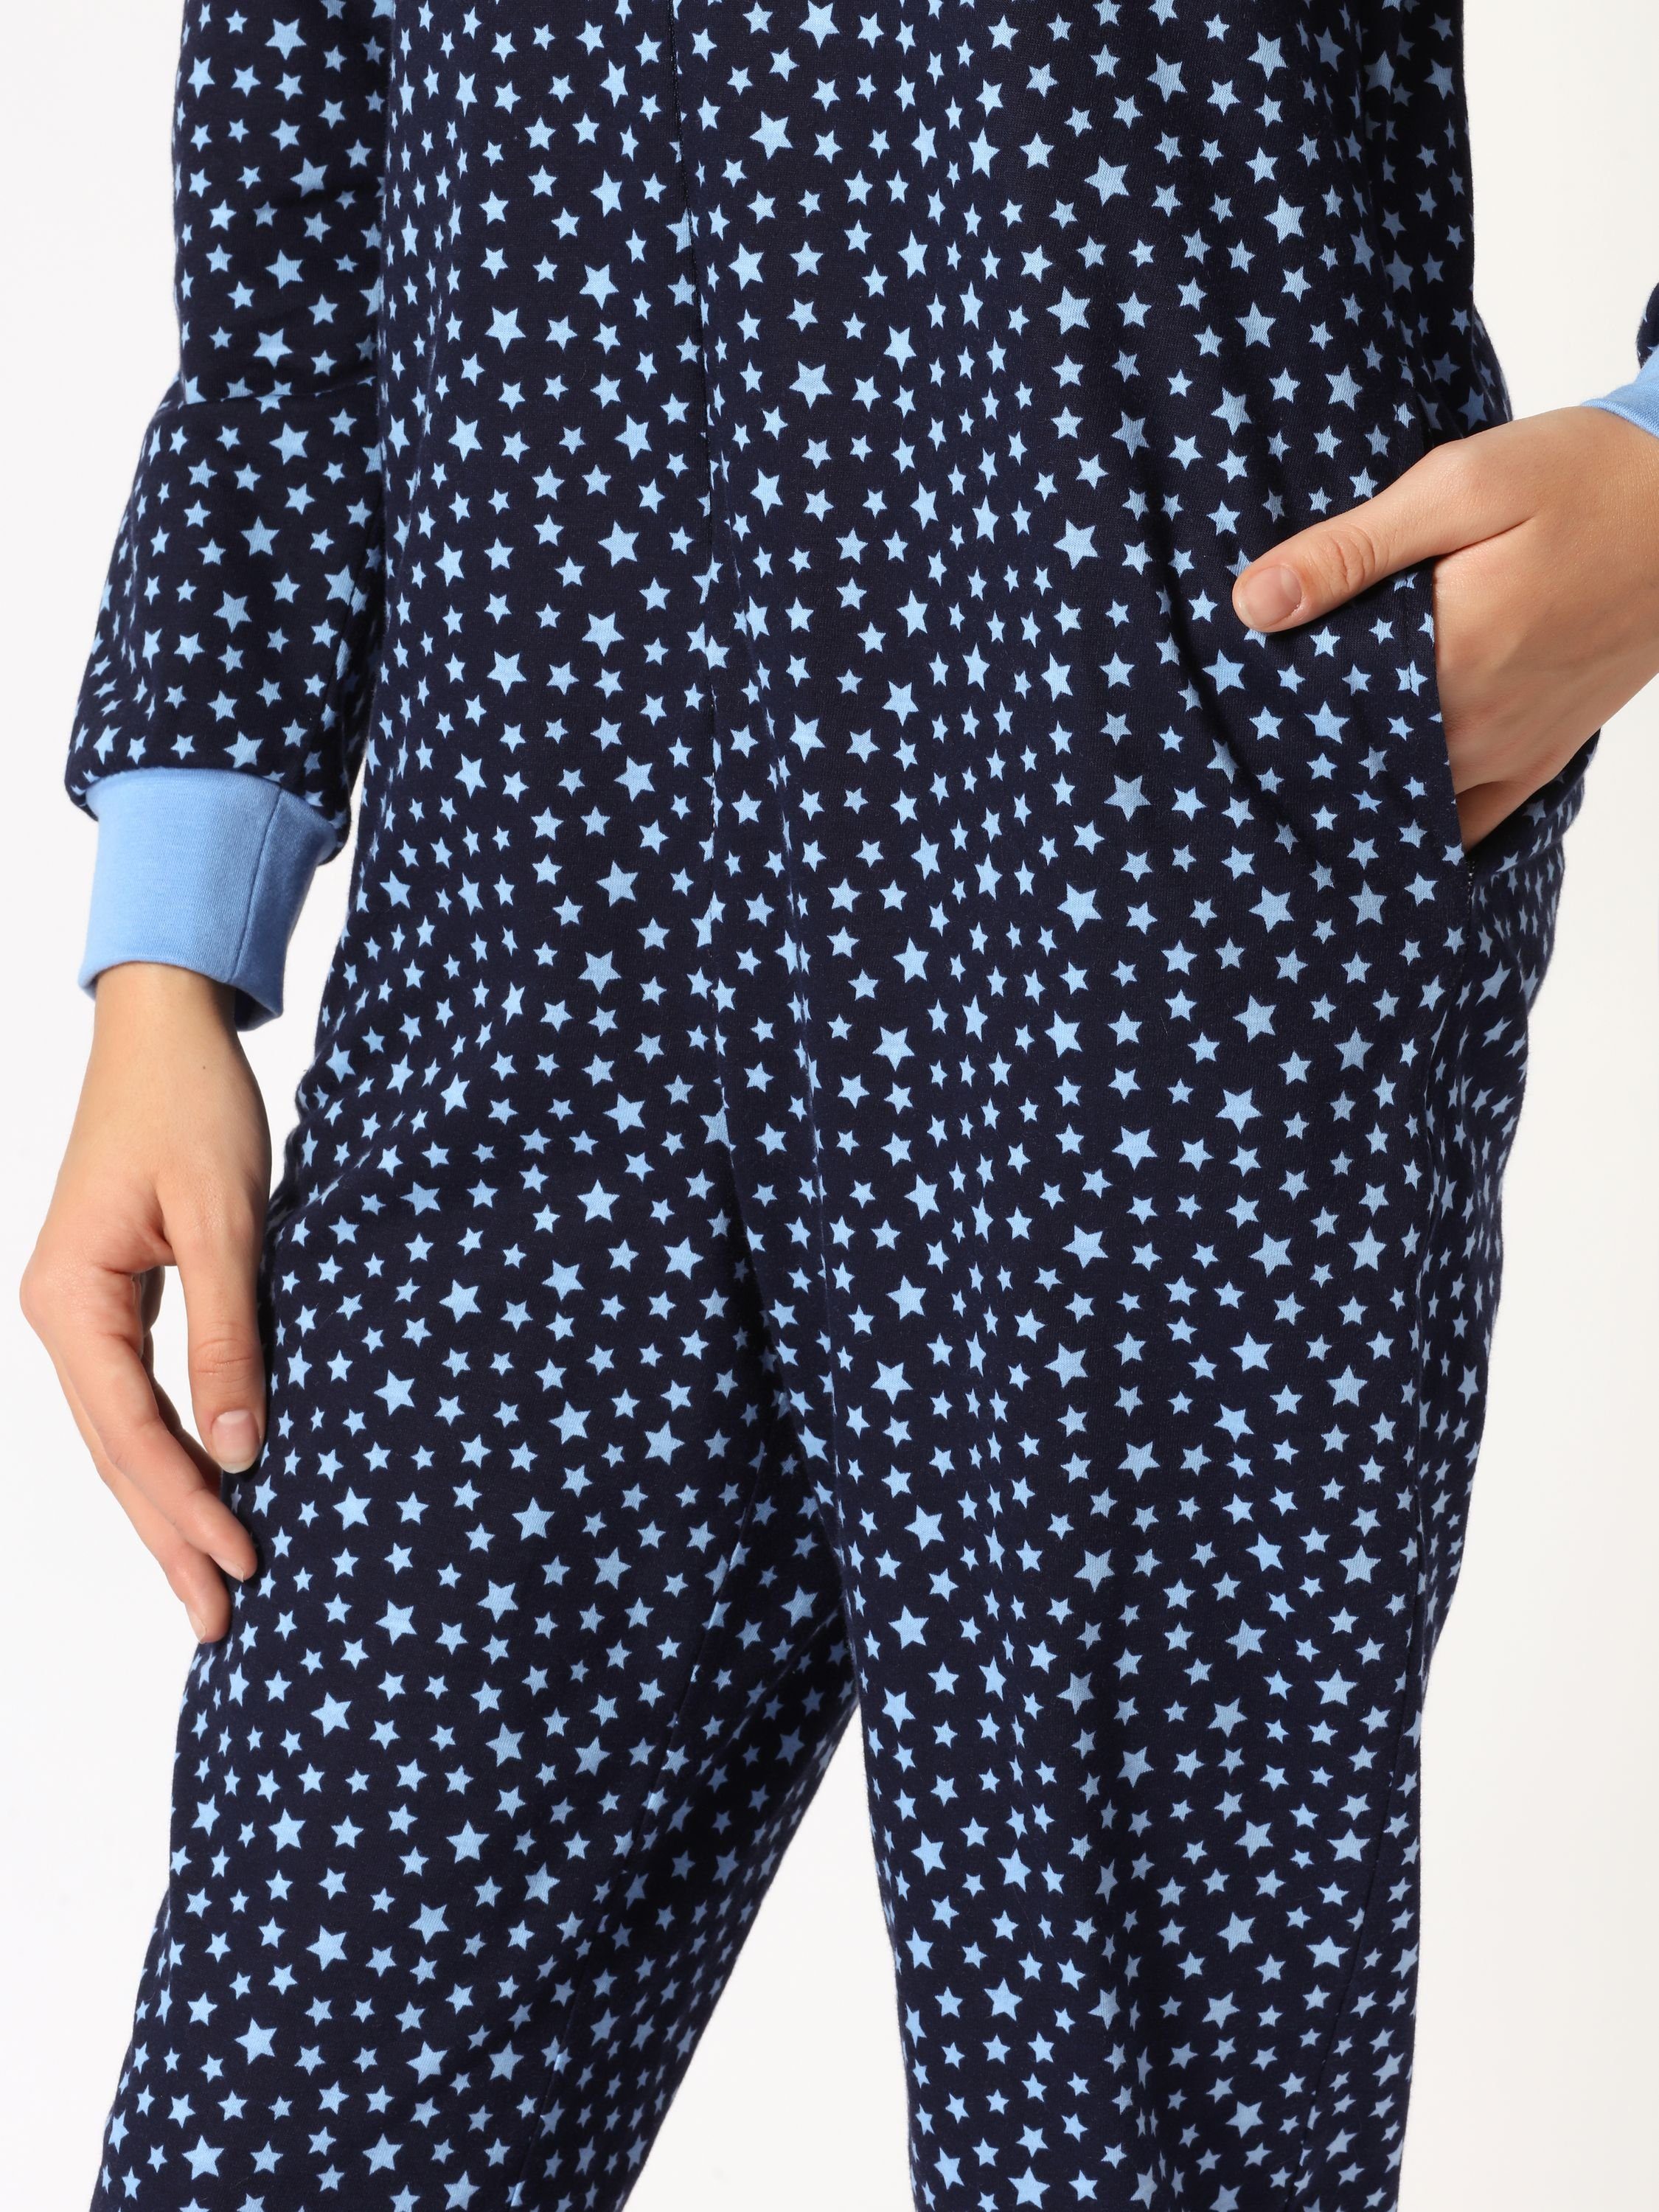 Jugend Blau/Sterne Schlafanzug Mädchen MS10-235 Merry Schlafanzug Schlafoverall Style